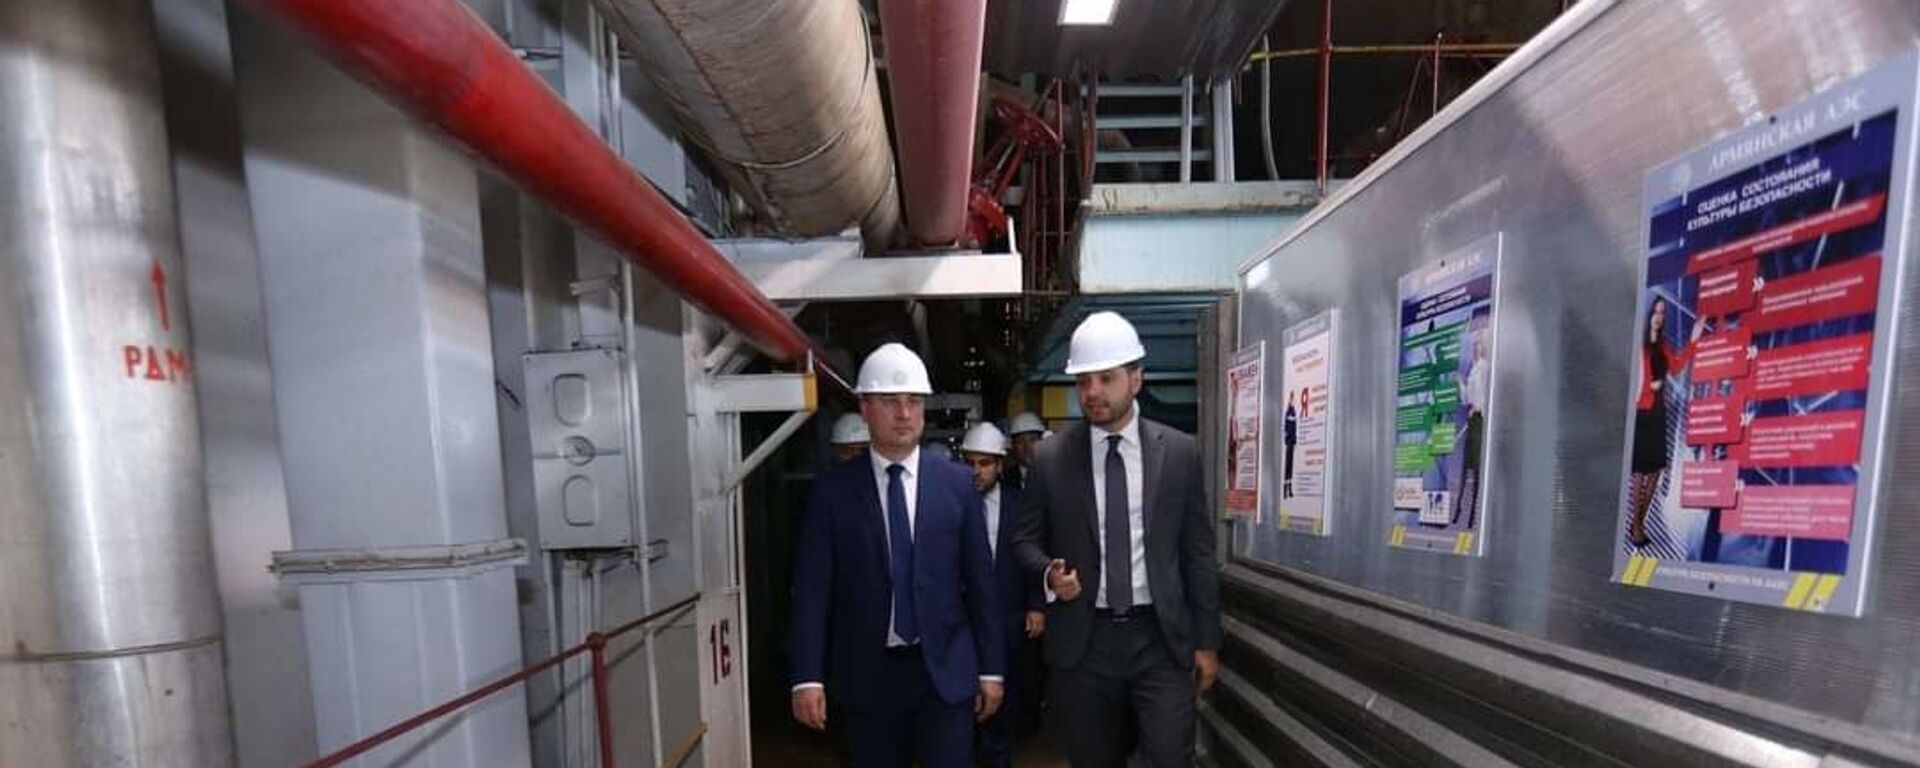 Министр Гнел Саносян посетил армянскую атомную электростанцию - Sputnik Արմենիա, 1920, 20.08.2021